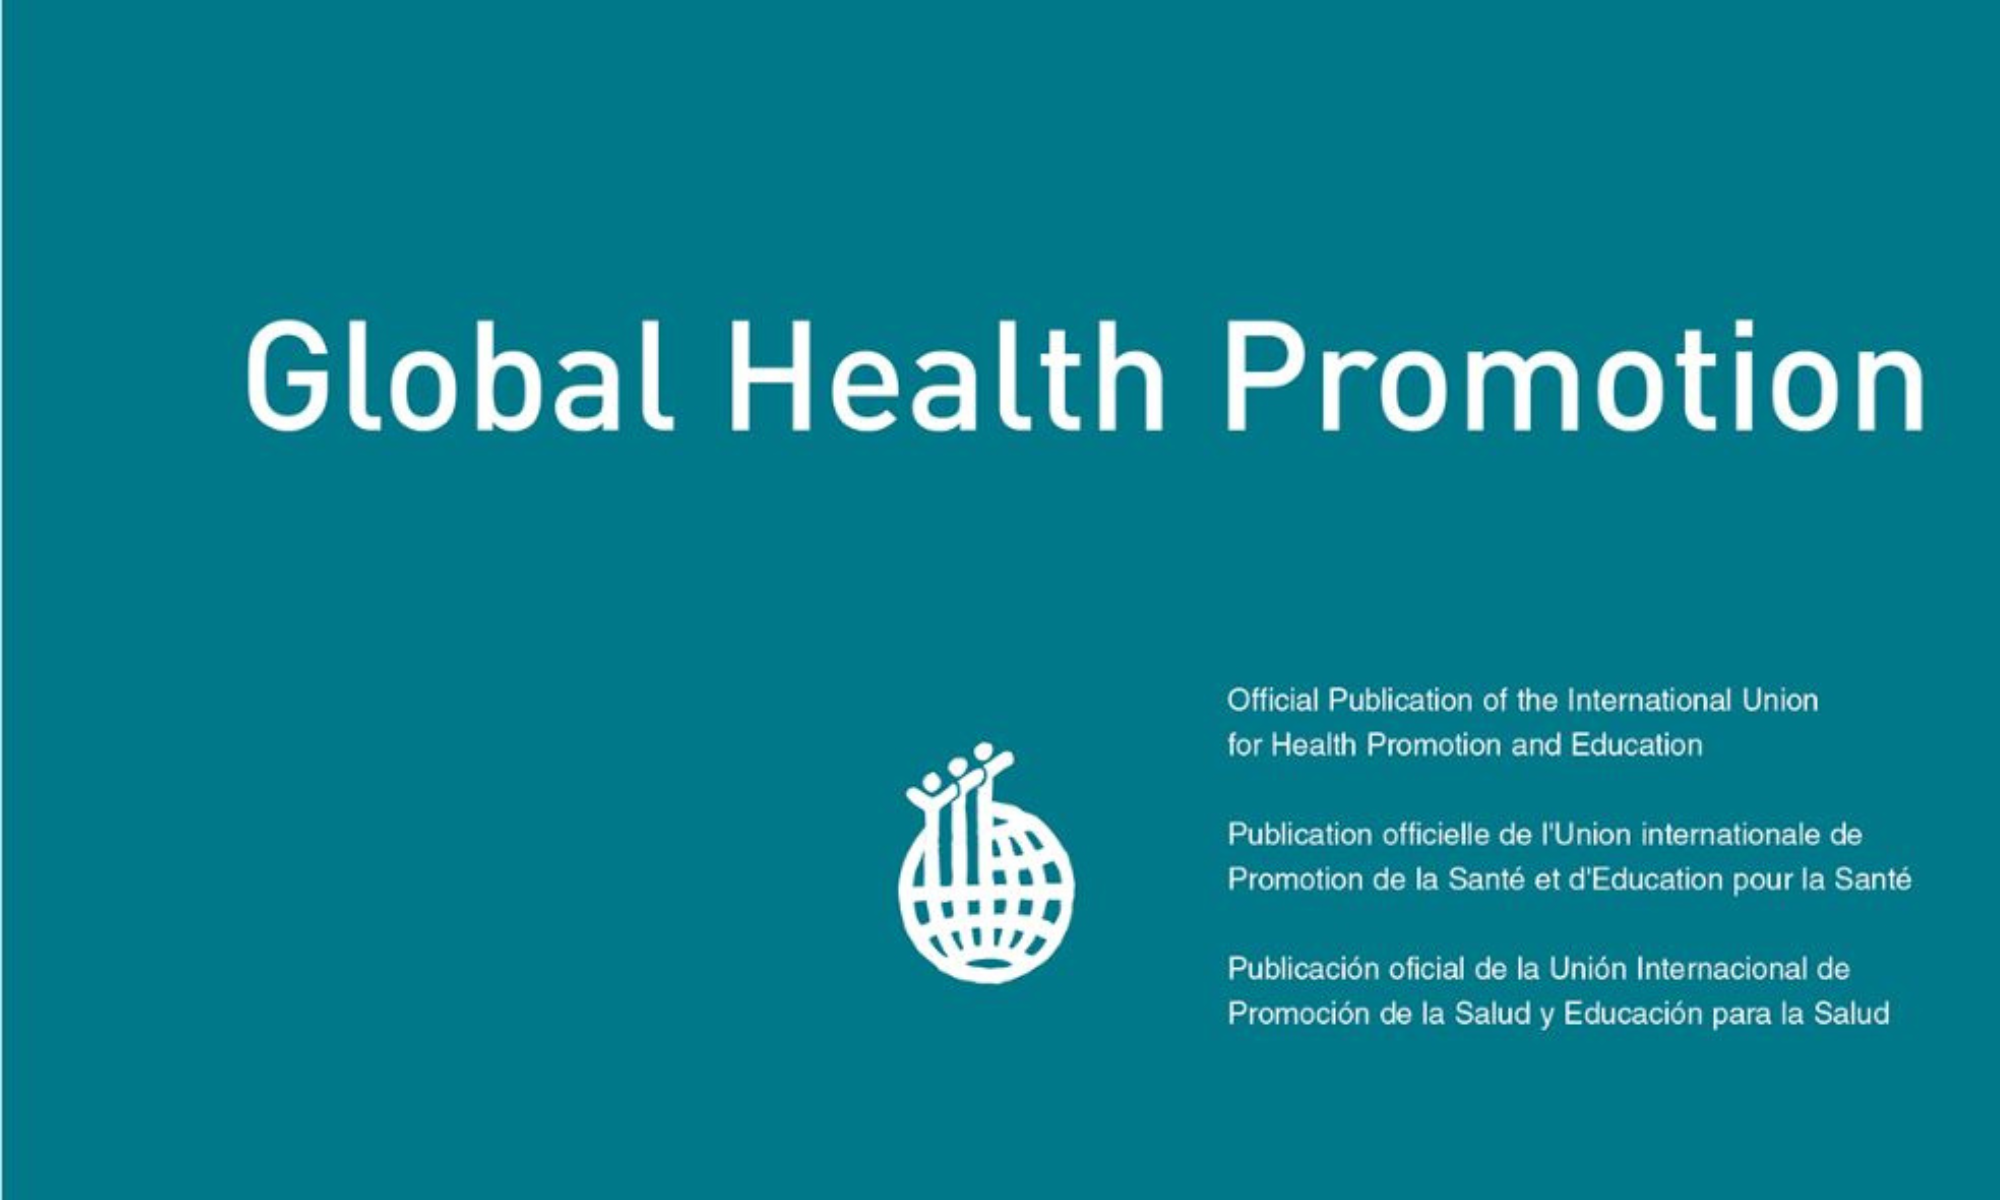  Convocatoria de artículos para la revista Global Health Promotion